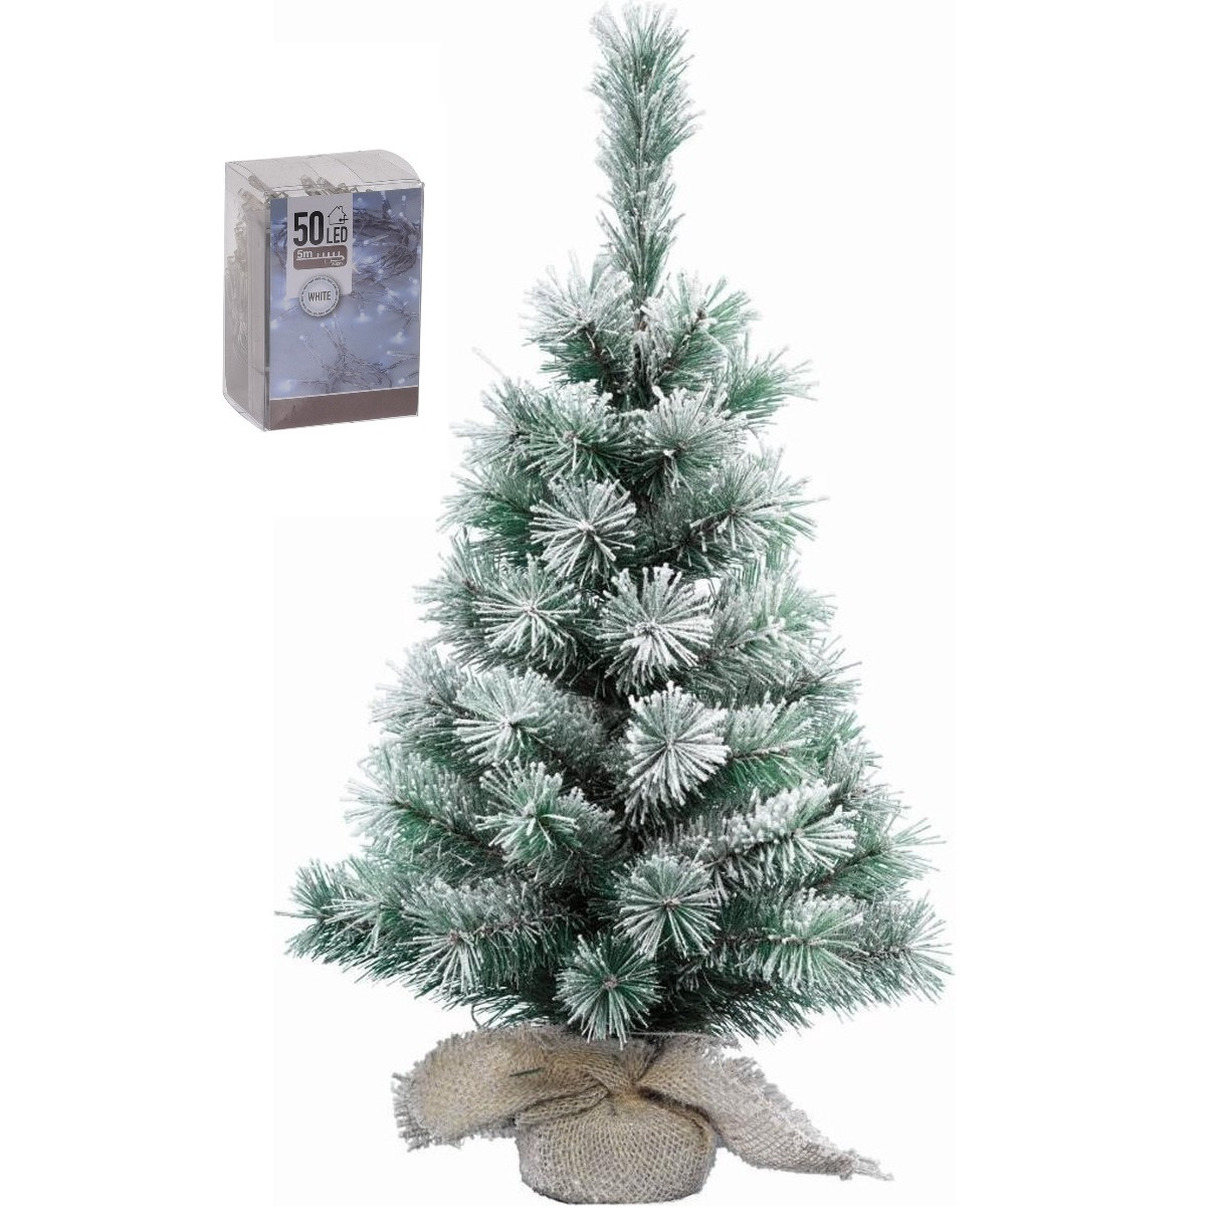 Kunst kerstboom met sneeuw 60 cm in jute zak inclusief 50 helder witte lampjes